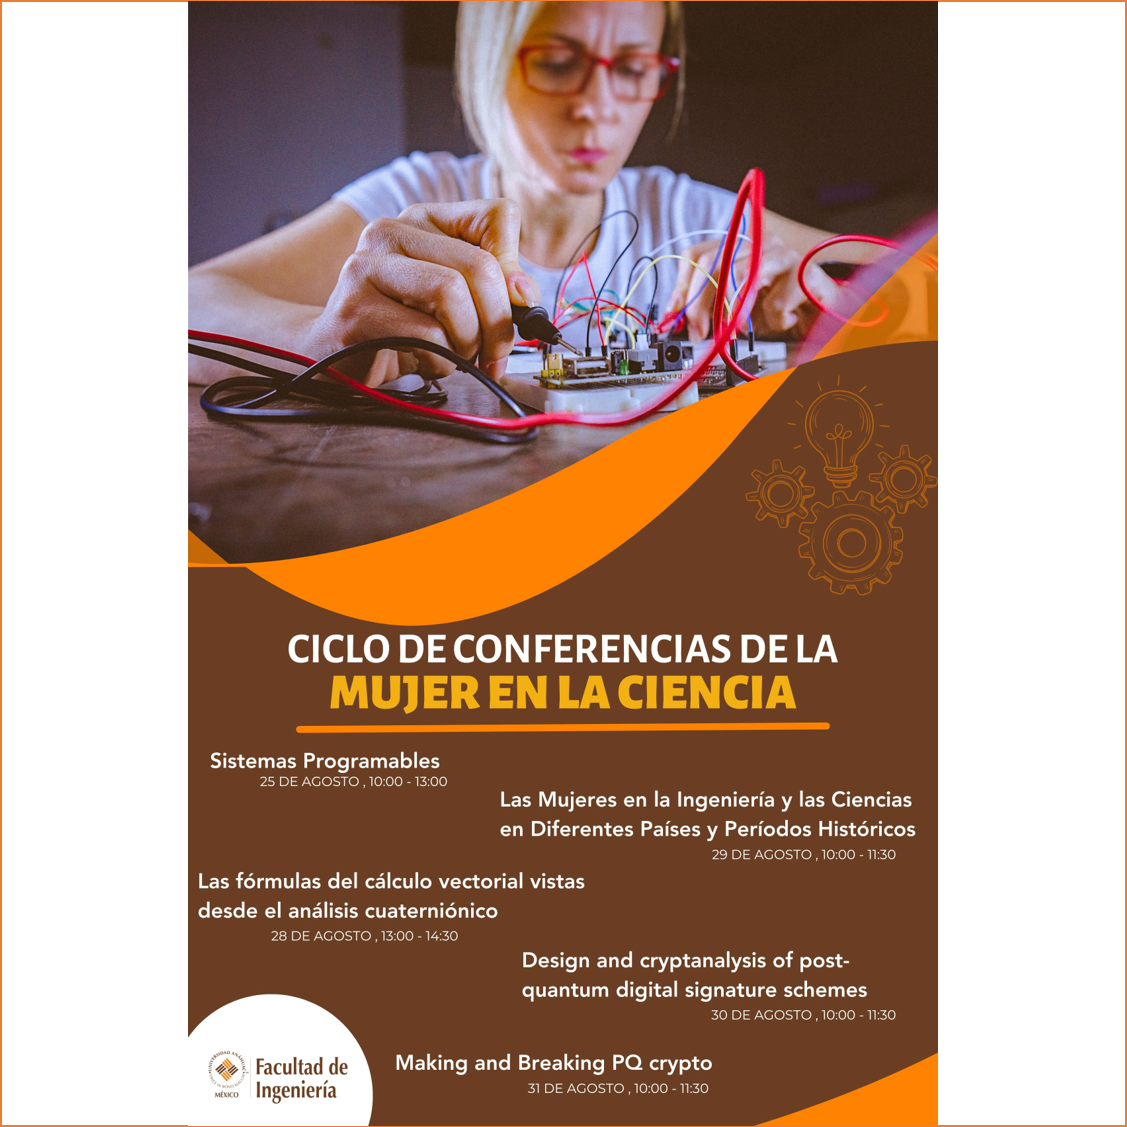 Platicas y talleres del "Ciclo de conferencias de la Mujer en la Ciencia"